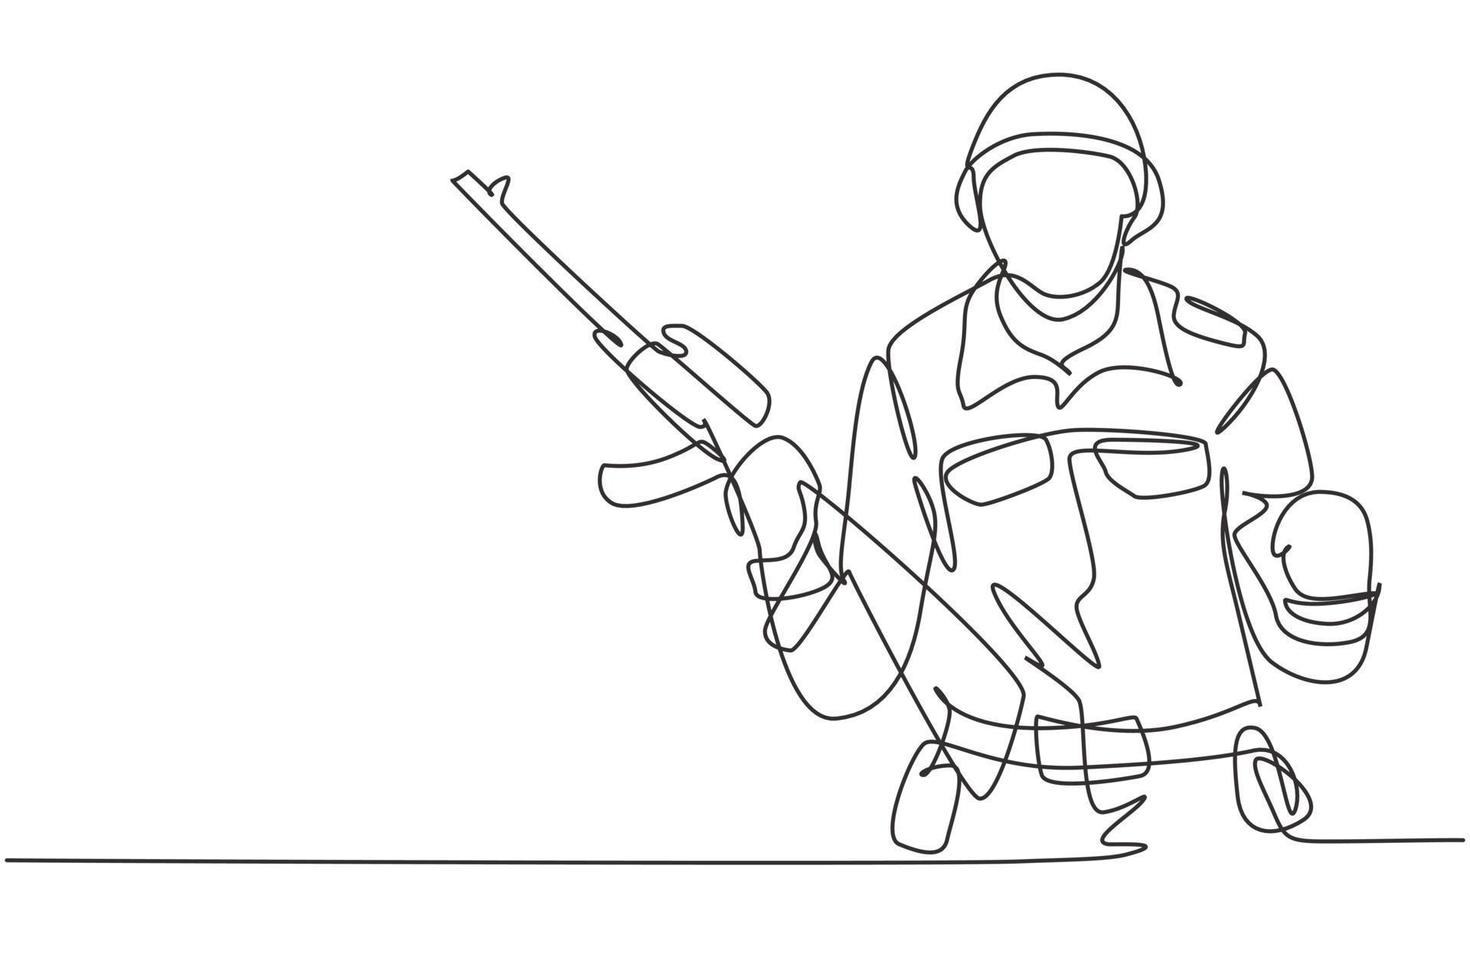 kontinuerlig en linje ritning soldat med vapen, full uniform, och fira gest är redo att försvara landet på slagfältet mot fienden. enkel linje rita design vektor grafisk illustration